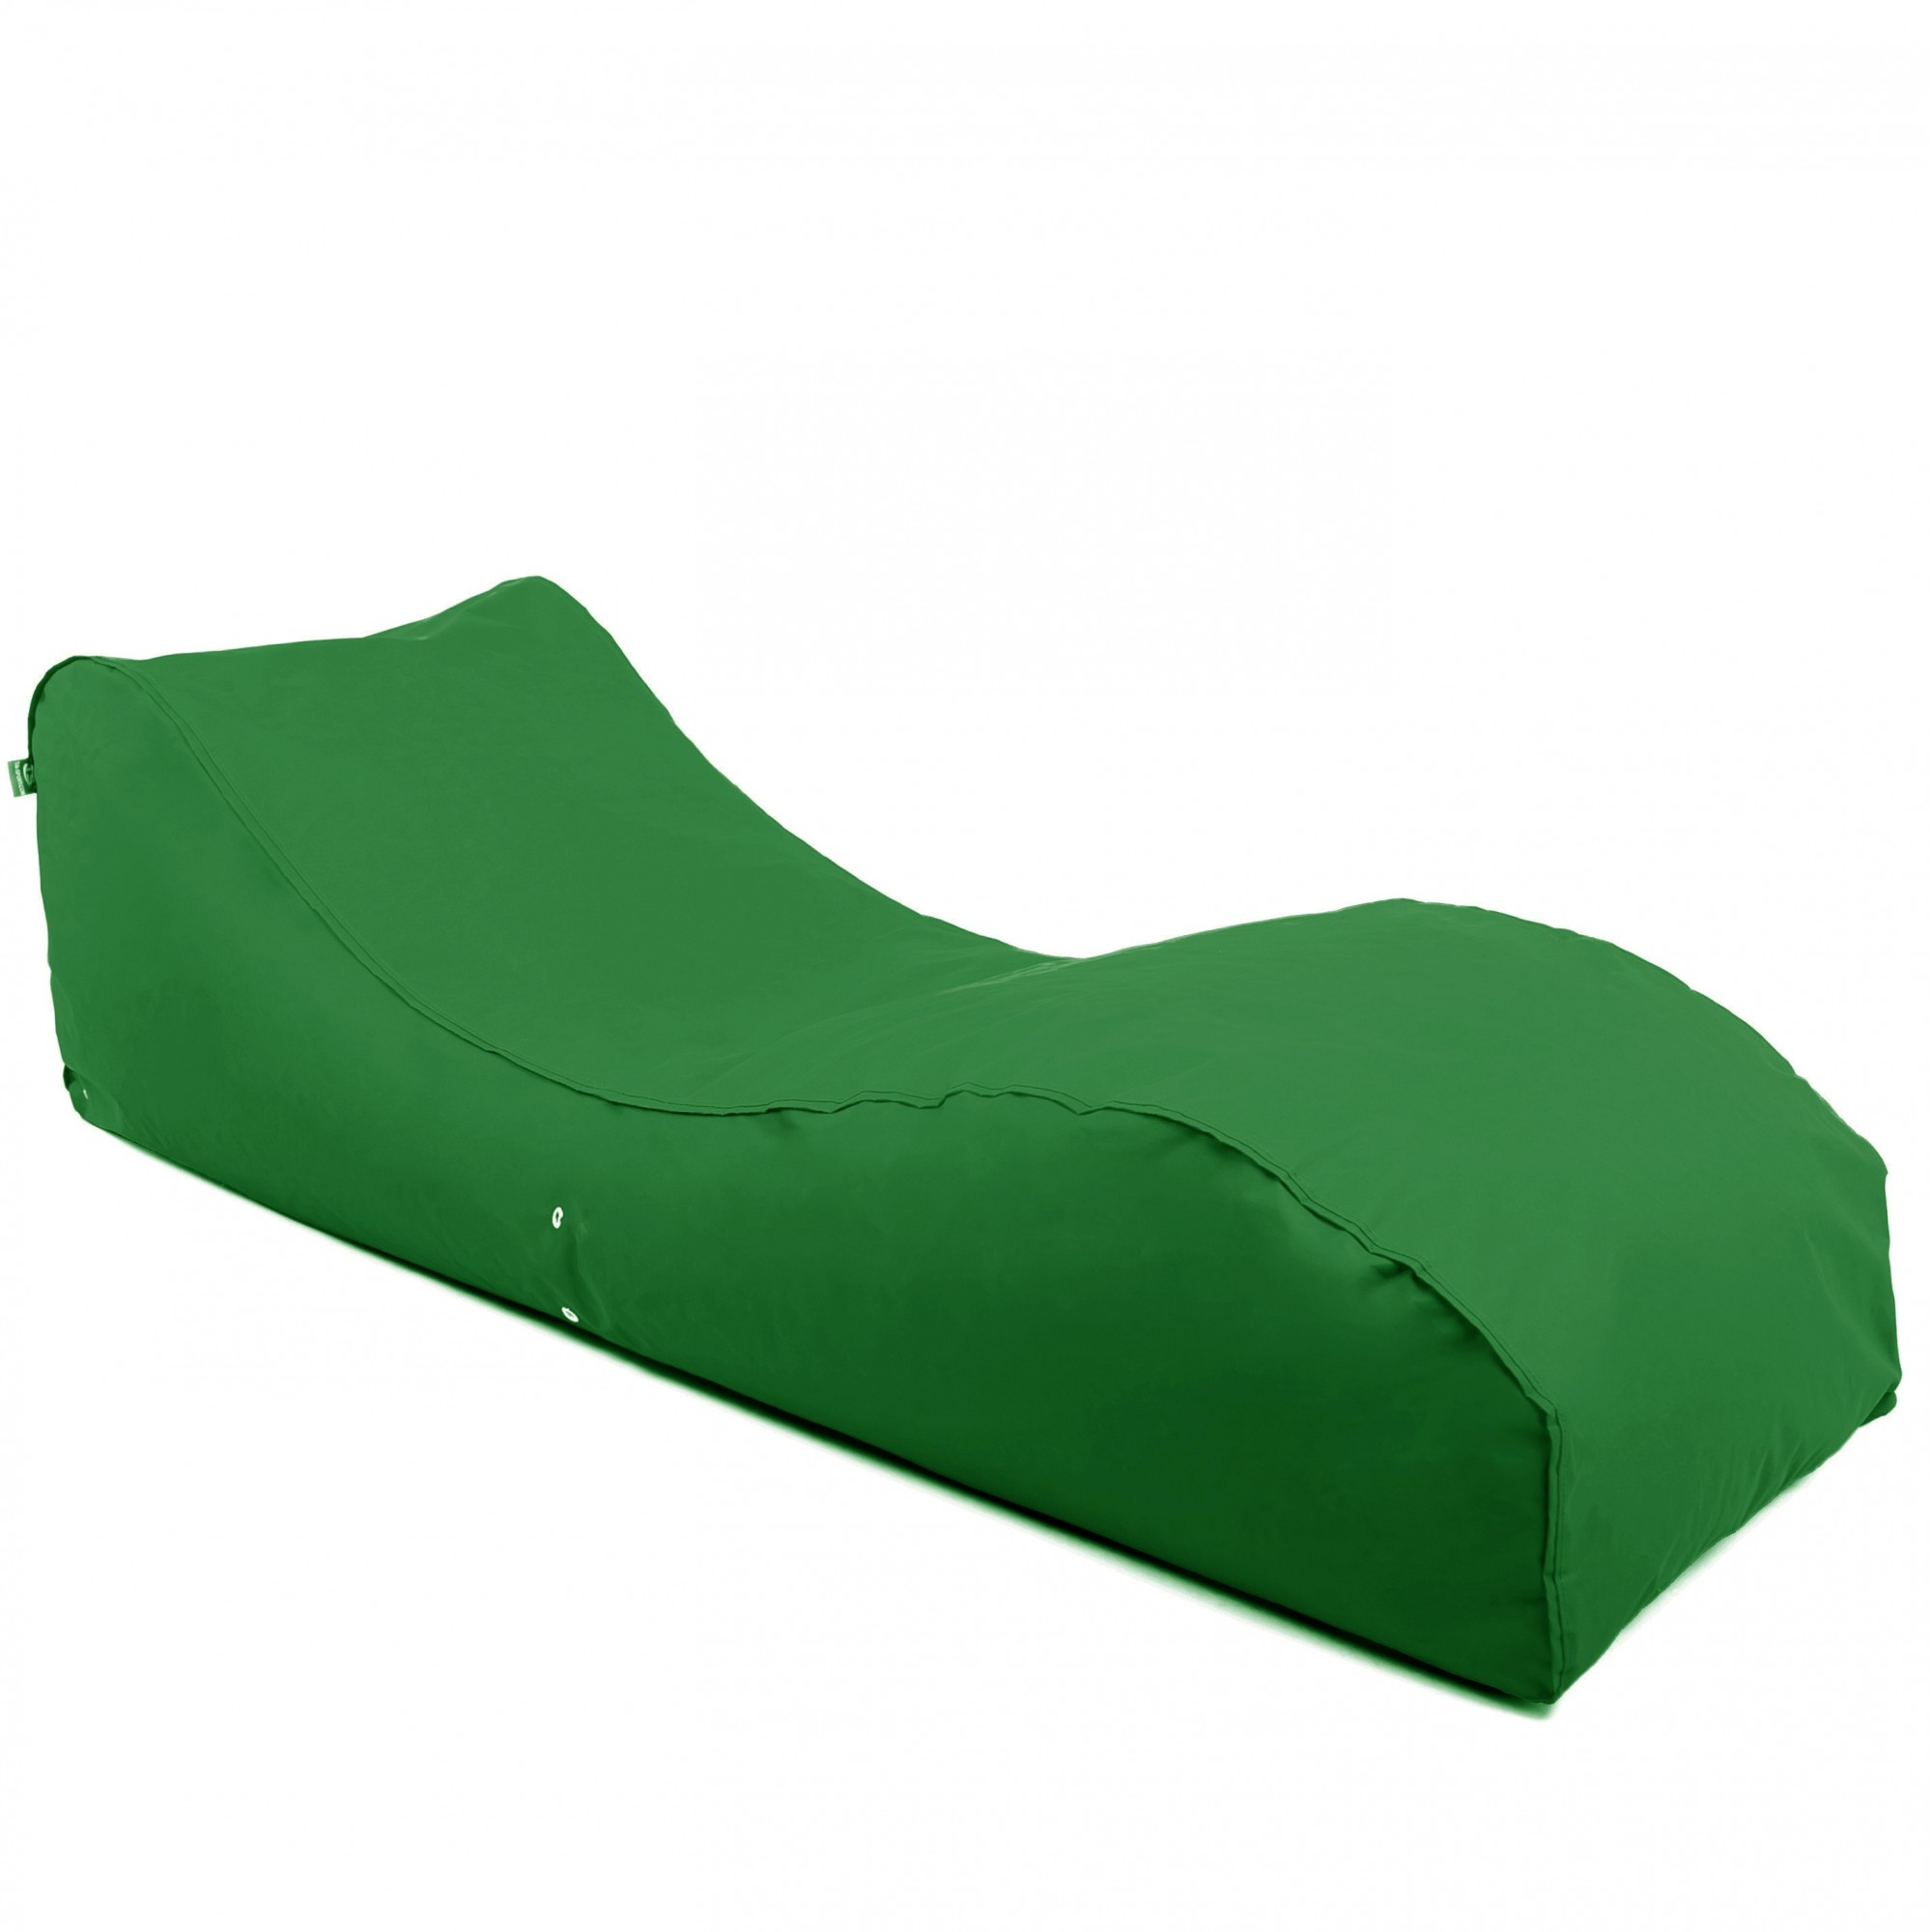 Безкаркасний лежак Tia-Sport Лаундж 185х60х55 см зелений (sm-0673-9)